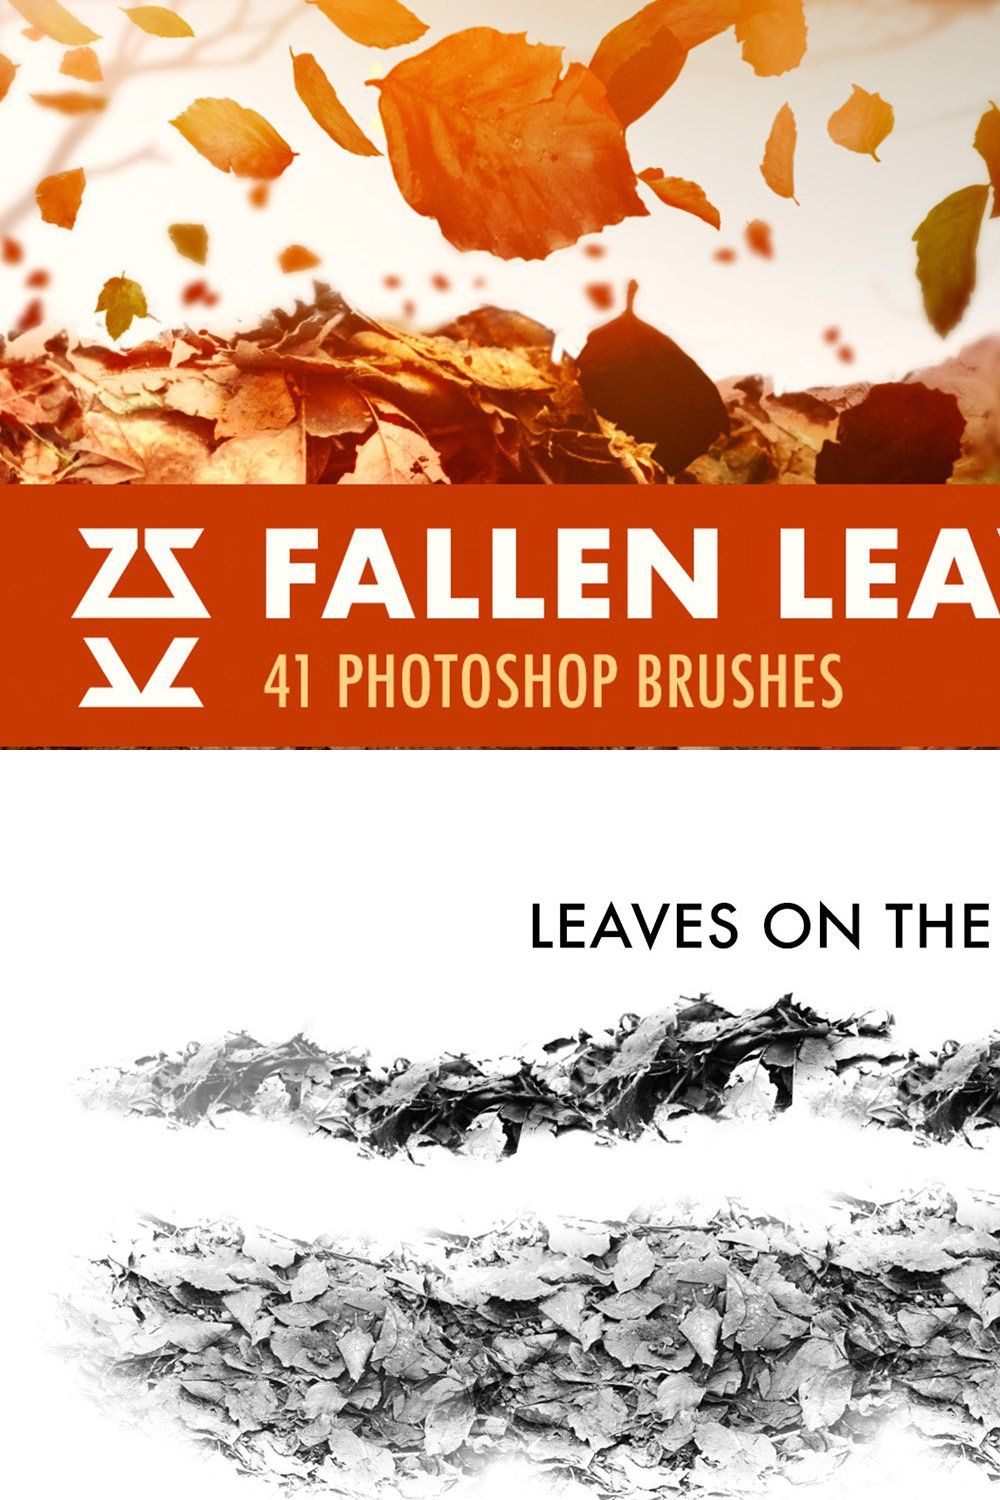 Fallen Leaves Brush Set pinterest preview image.